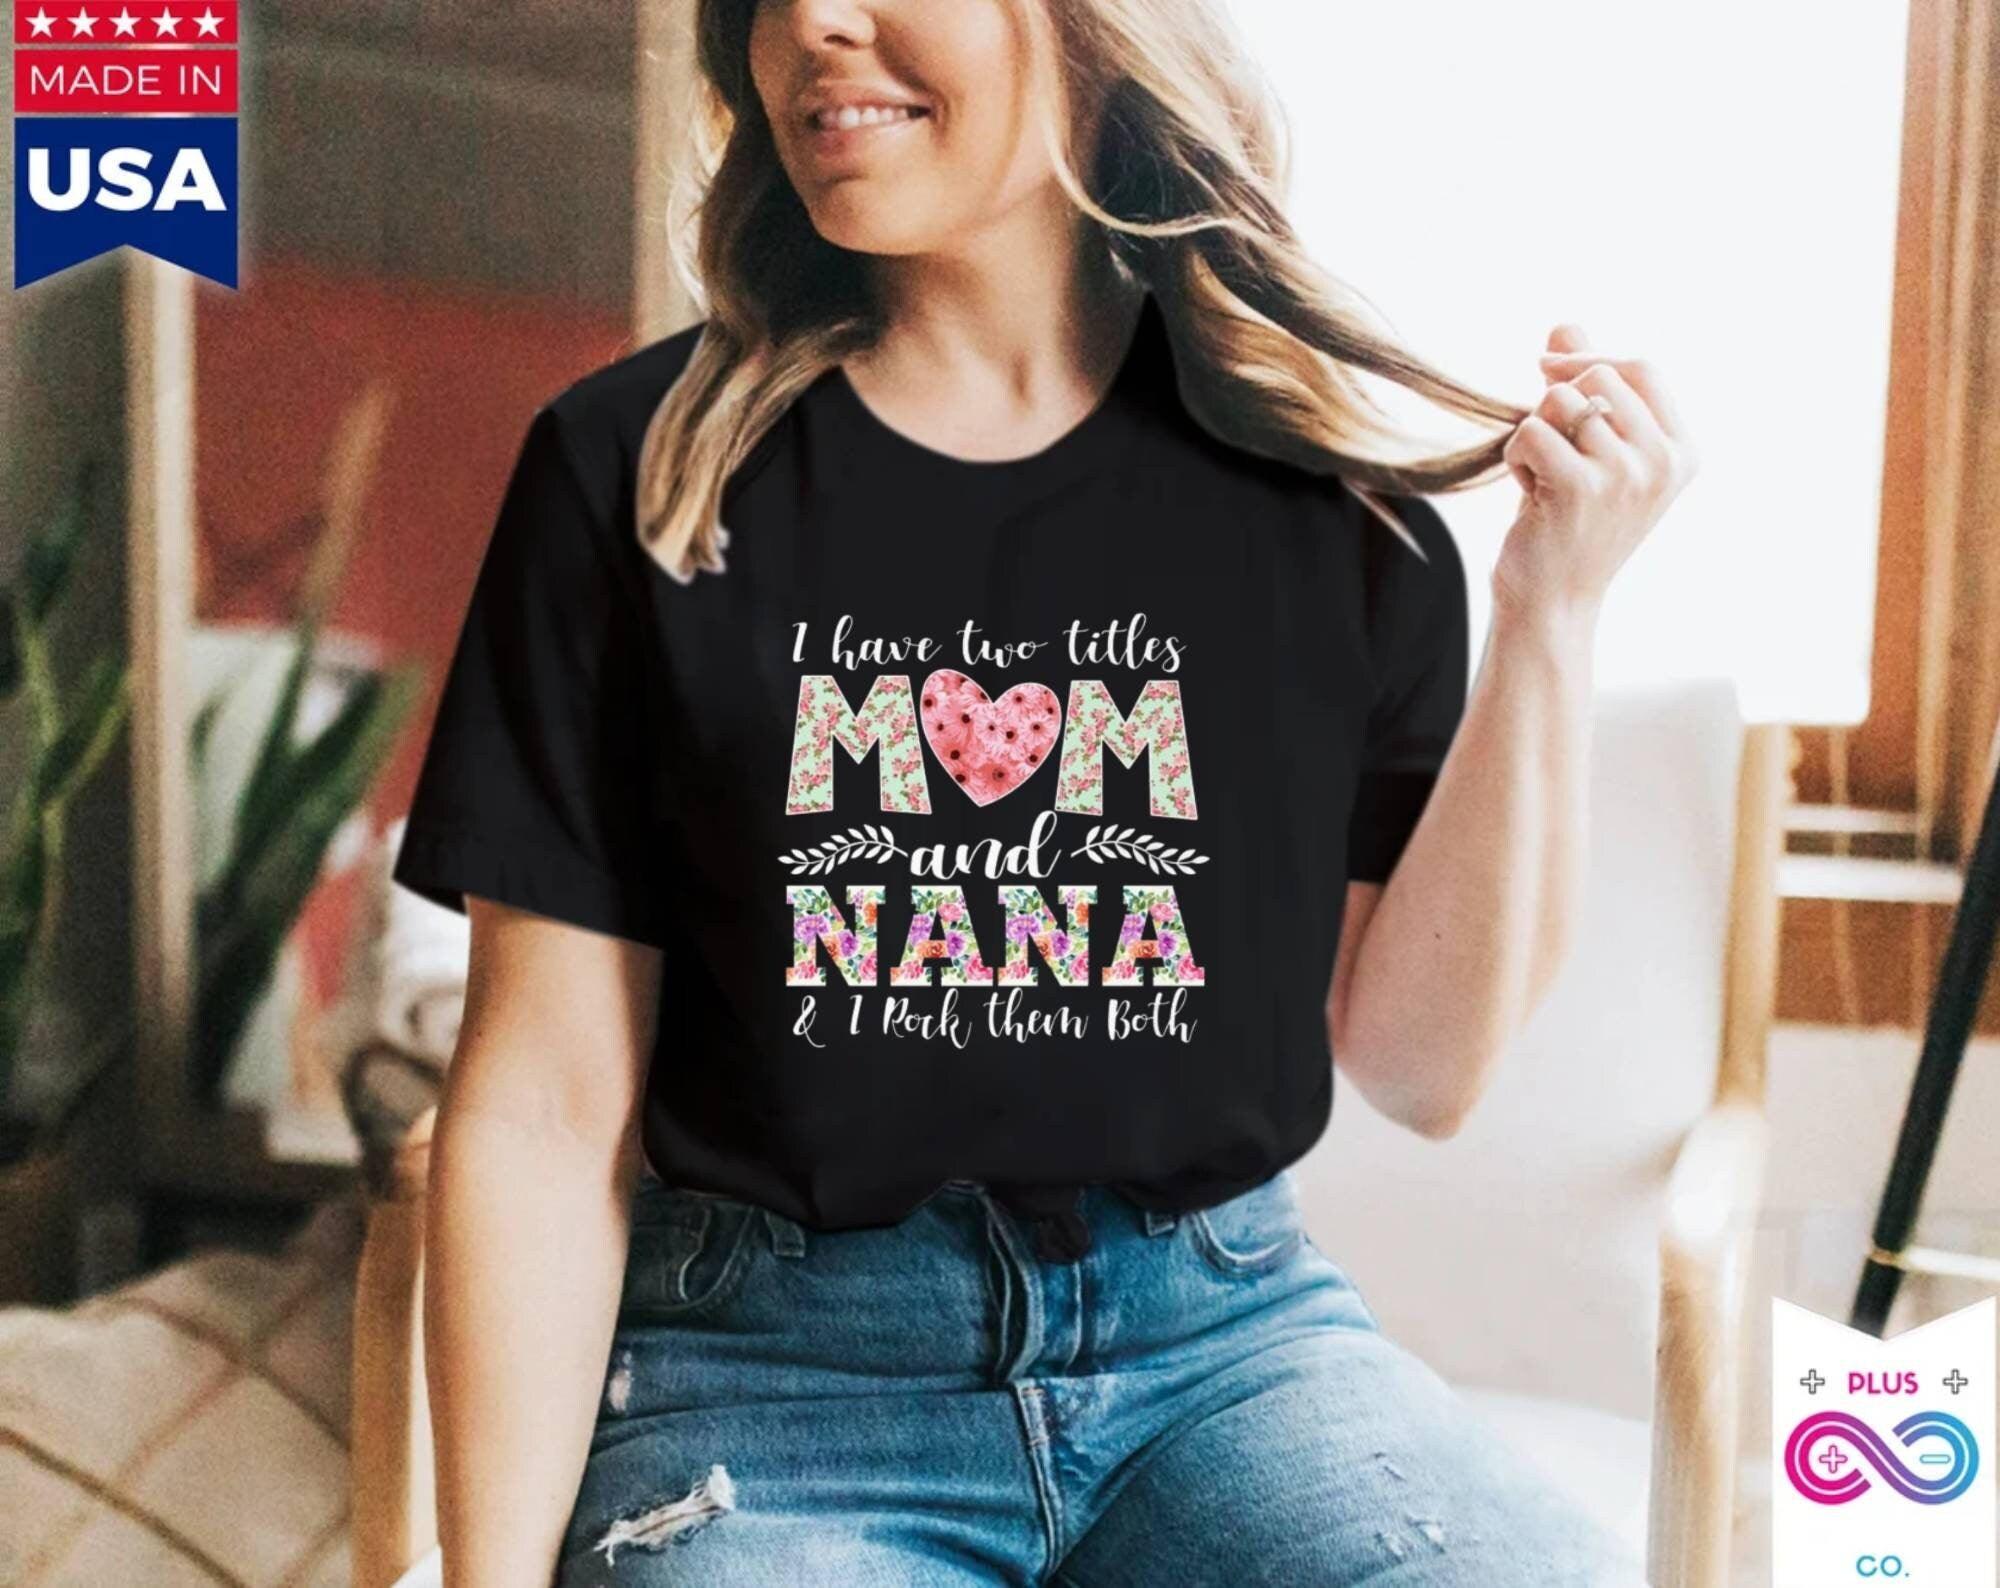 मेरे पास दो शीर्षक हैं माँ और नाना, और मैं उन दोनों को बहुत पसंद करता हूँ टी-शर्ट, नाना शर्ट, नई दादी टीशर्ट, दादी और माँ टी, दादी उपहार - प्लसमिनसको.कॉम